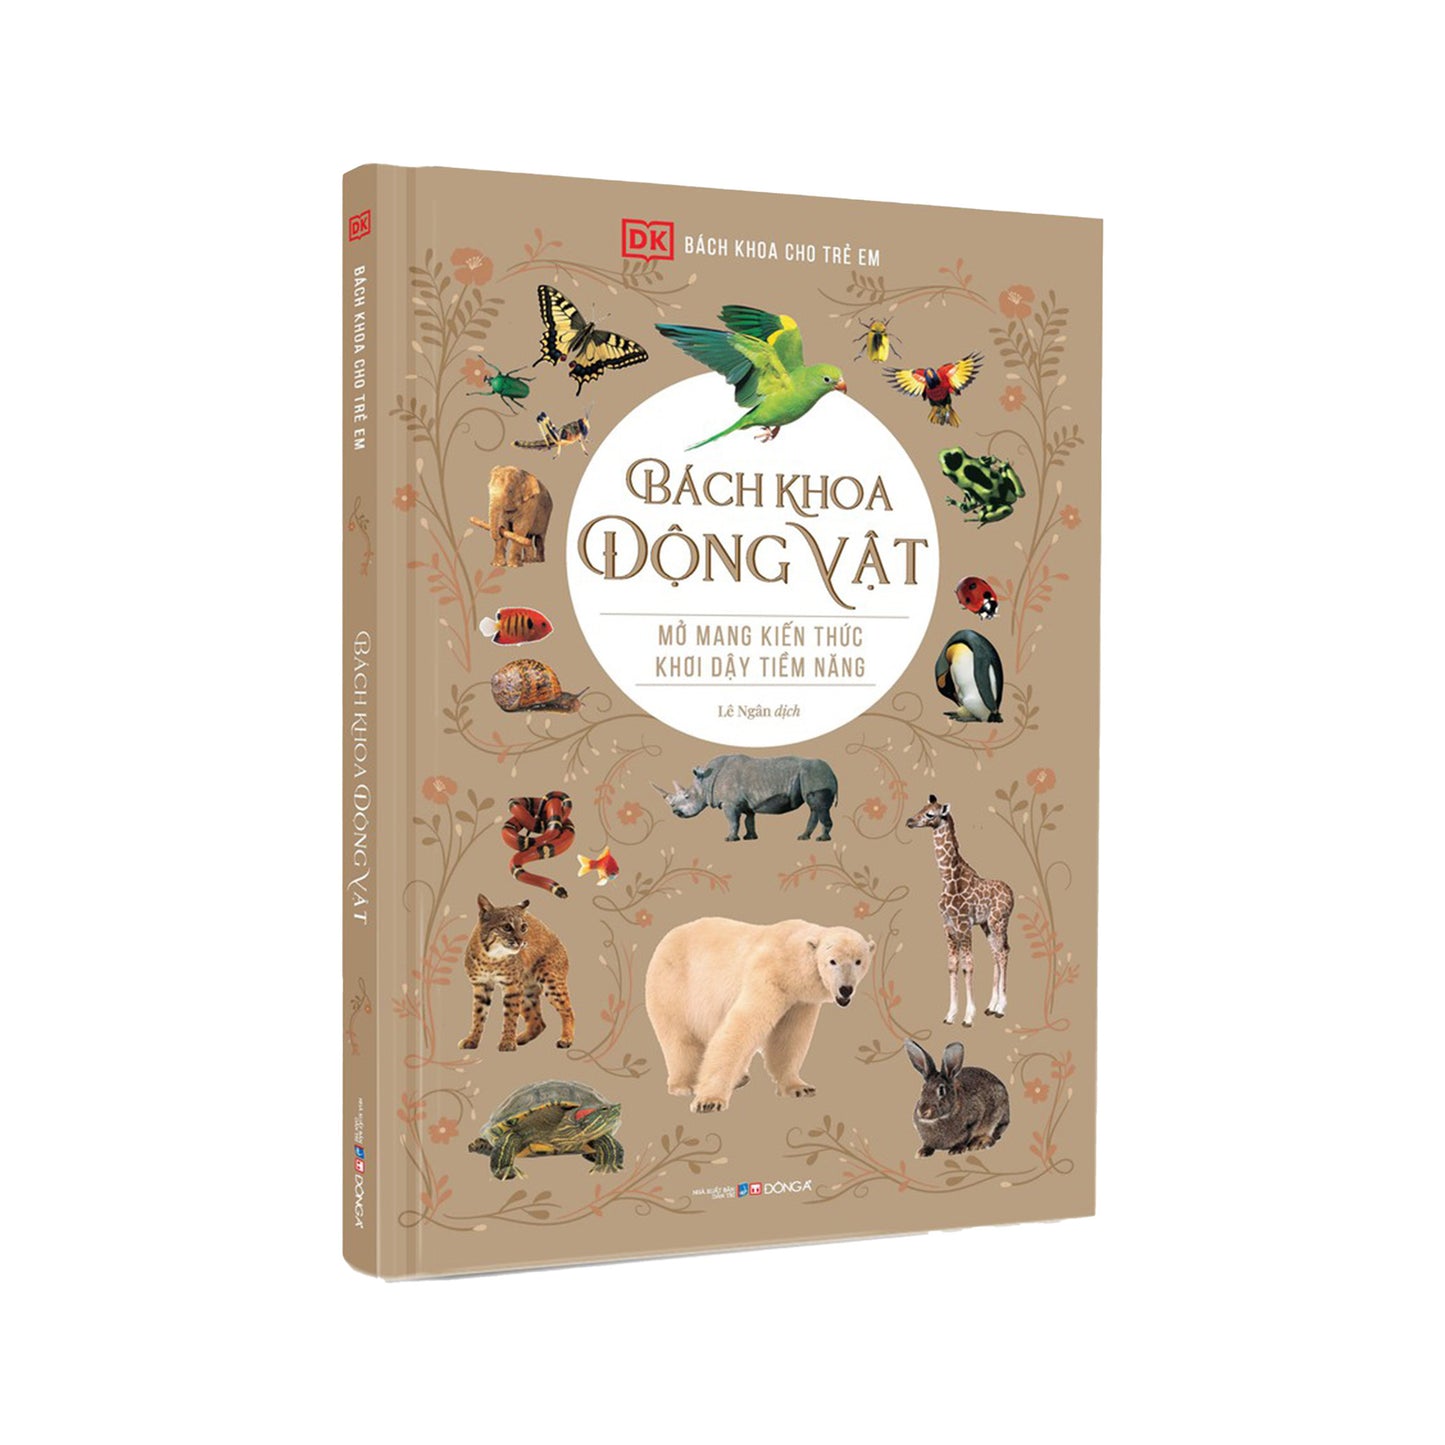 Bách Khoa Động Vật - translation of Animal Encyclopedia